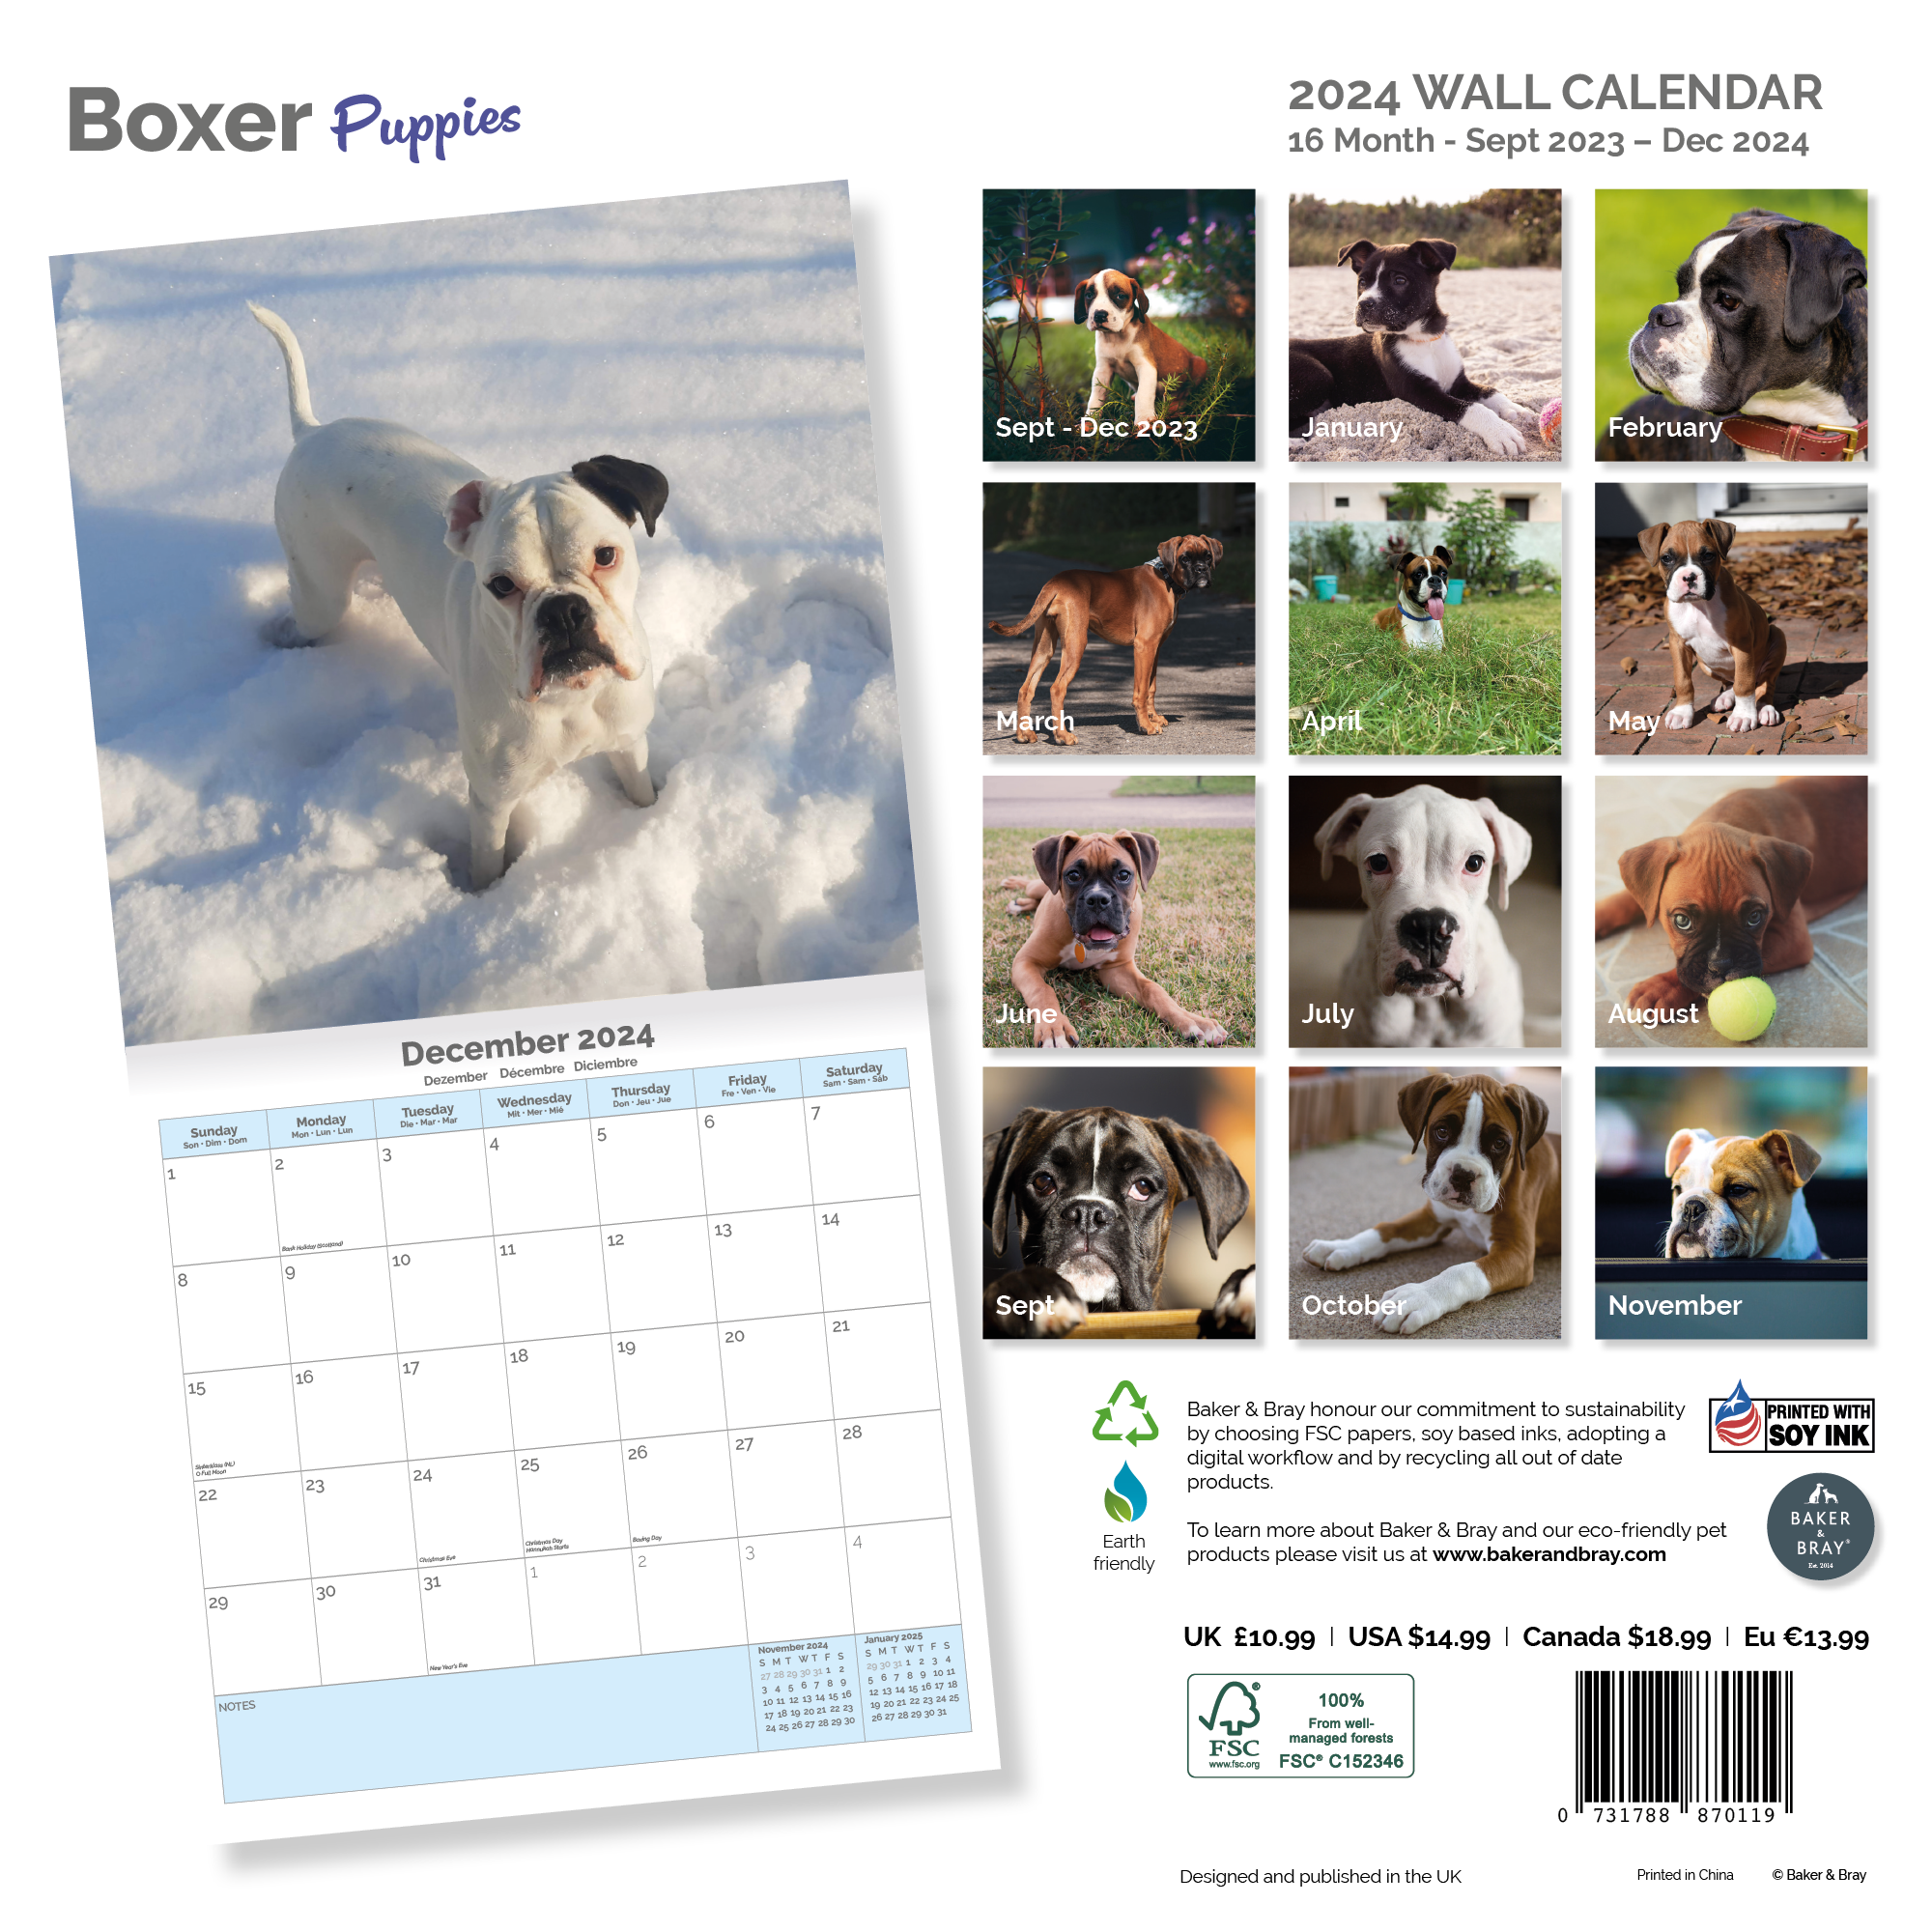 Boxer puppies Calendar 2024